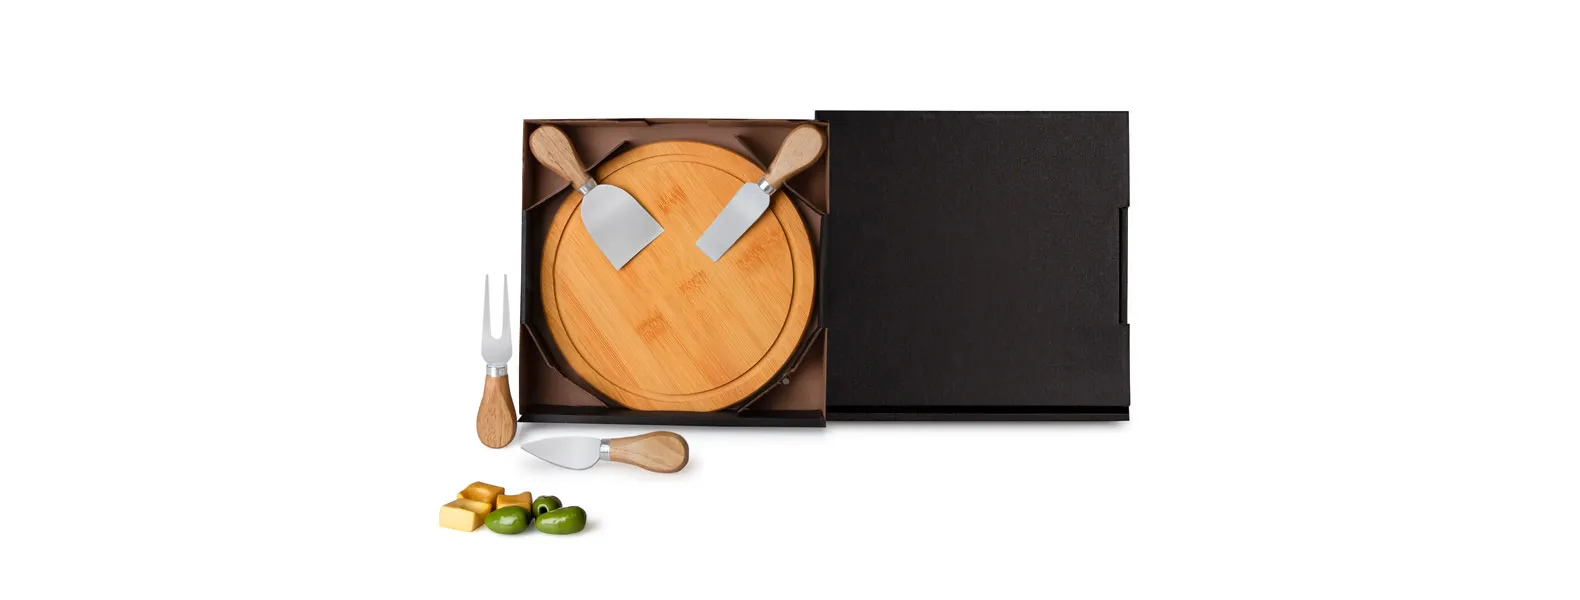 Kit para queijo. Conta com tábua redonda em bambu; três facas e garfo para queijos em madeira / inox. Tábua confeccionada com tripla camada invertida, para dar maior durabilidade e não deformar com o passar do tempo.